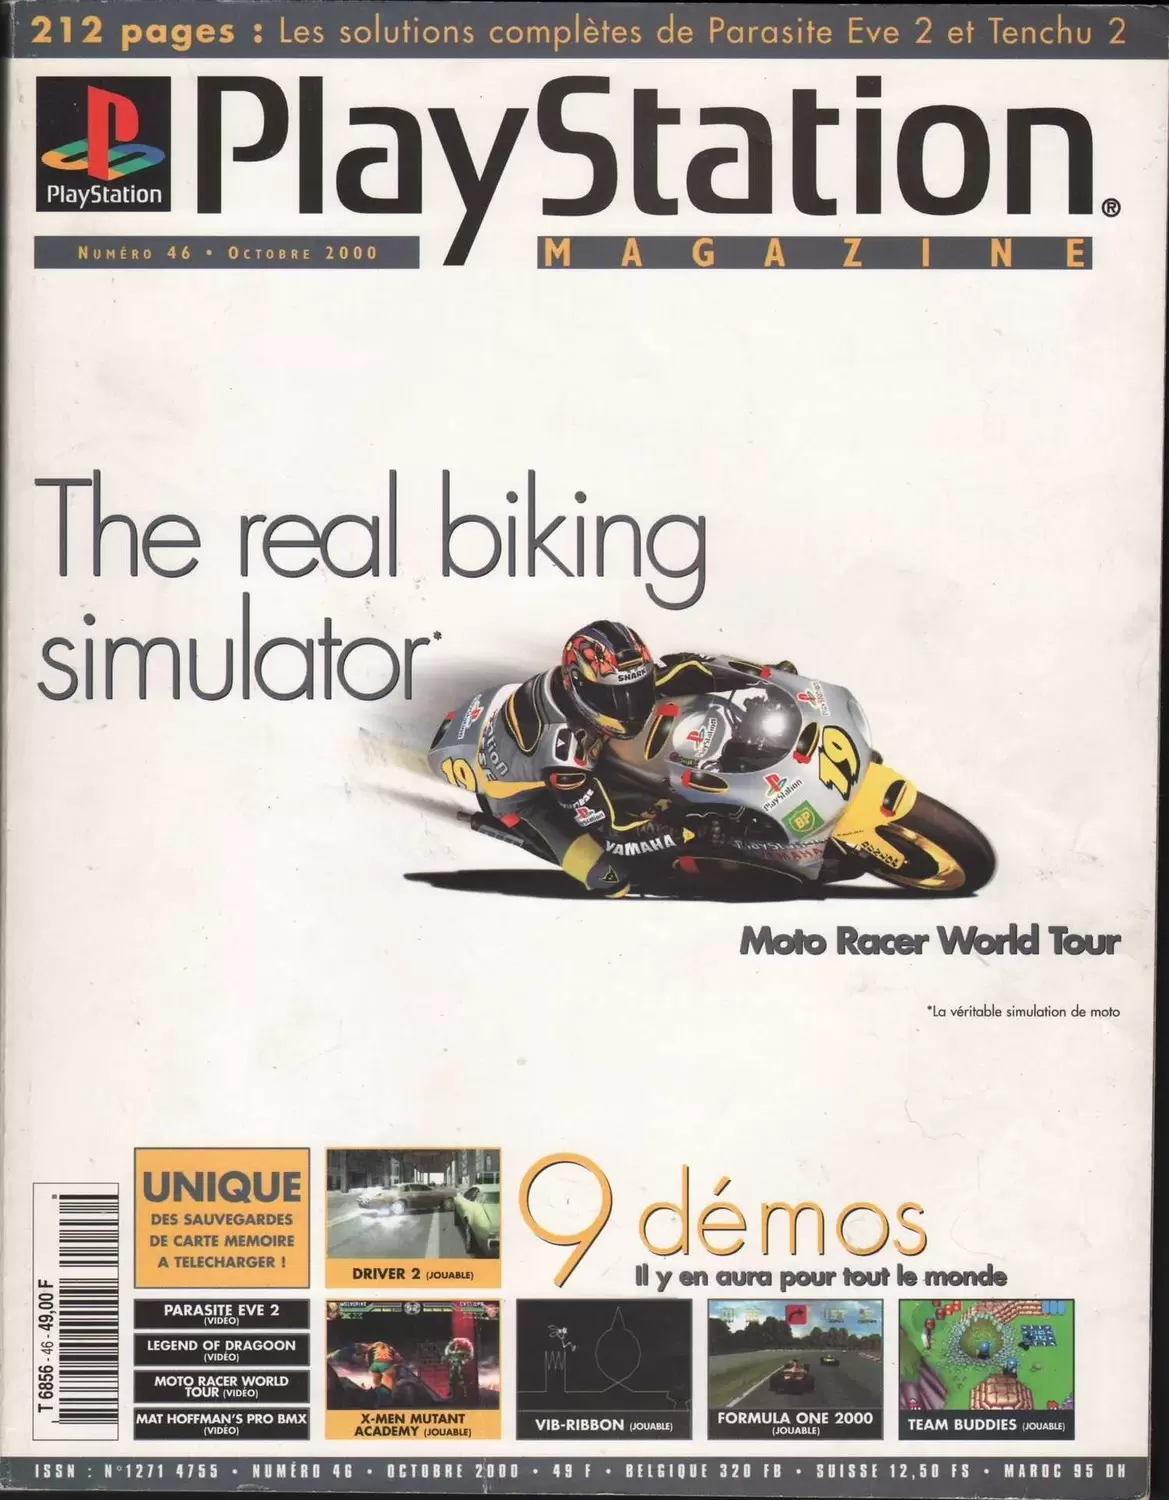 Playstation Magazine - Playstation Magazine #46